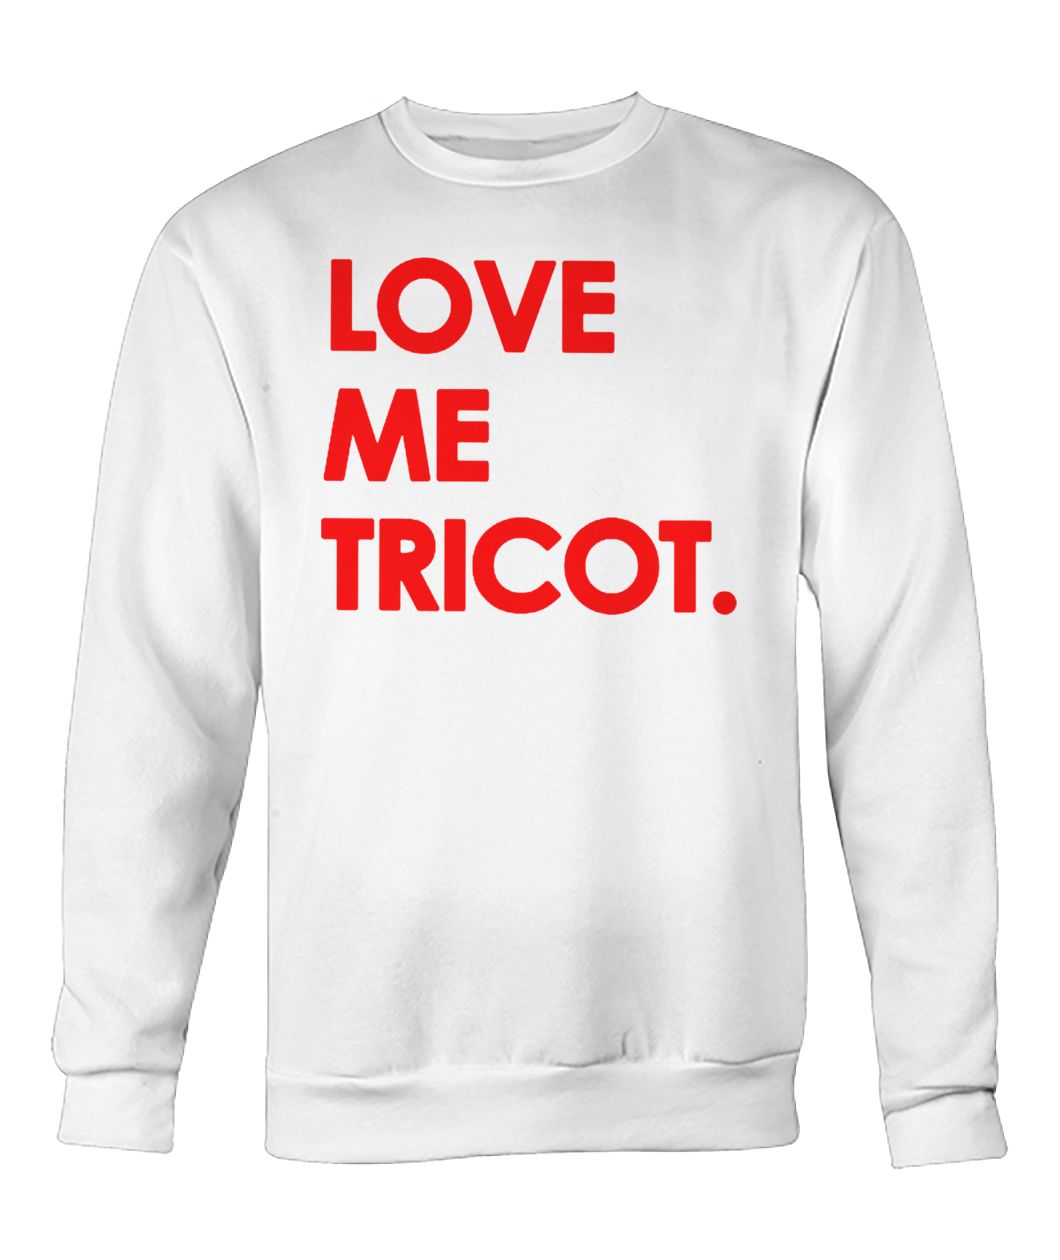 Love me tricot crew neck sweatshirt